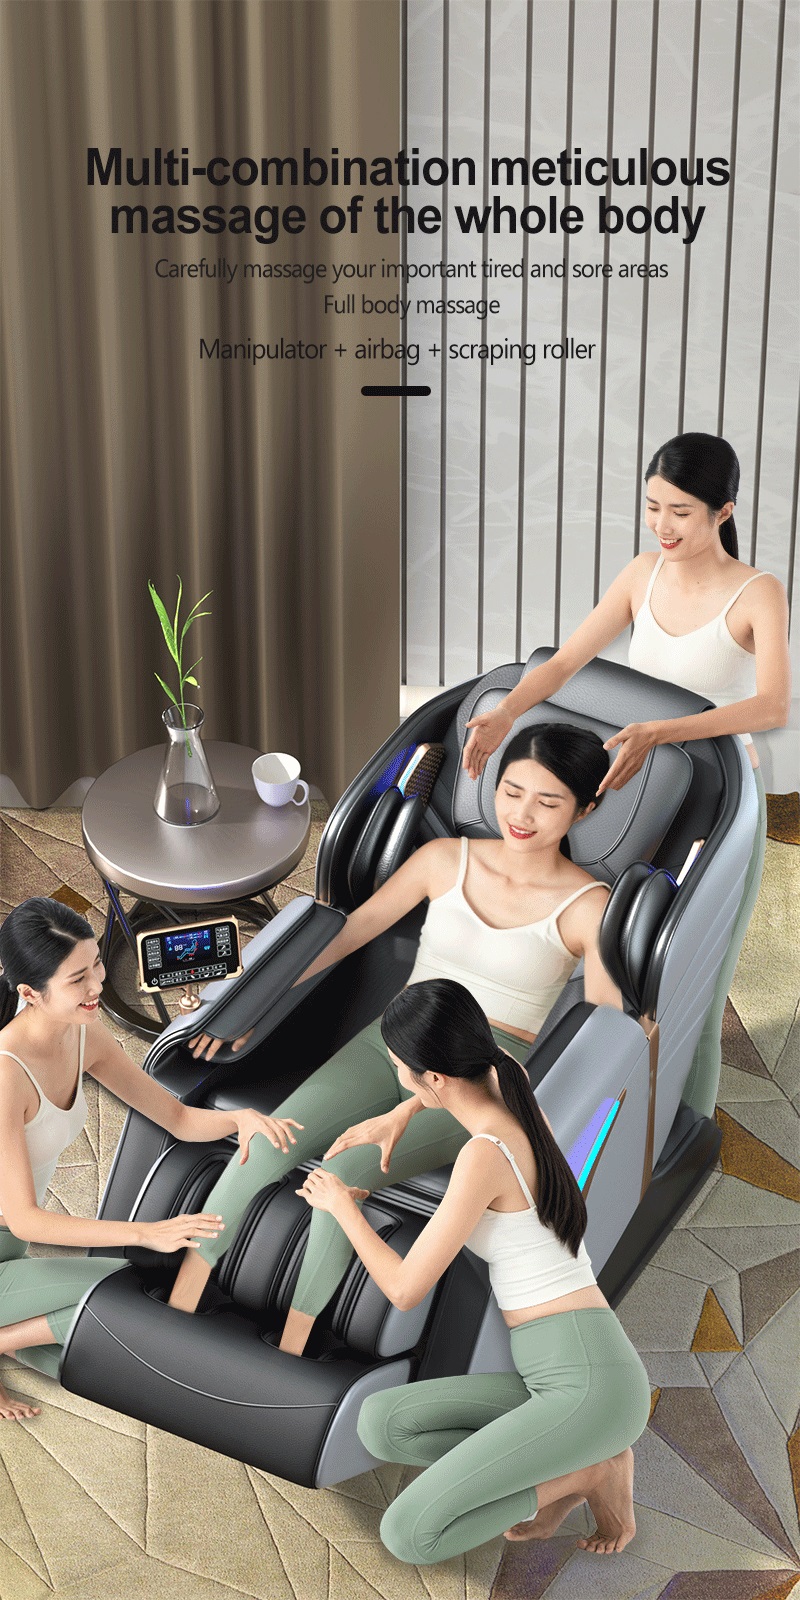 Silla masajeadora de gravedad cero para uso doméstico, presión de aire, Control táctil LCD, terapia de calor, silla masajeadora relajante con música, 2022